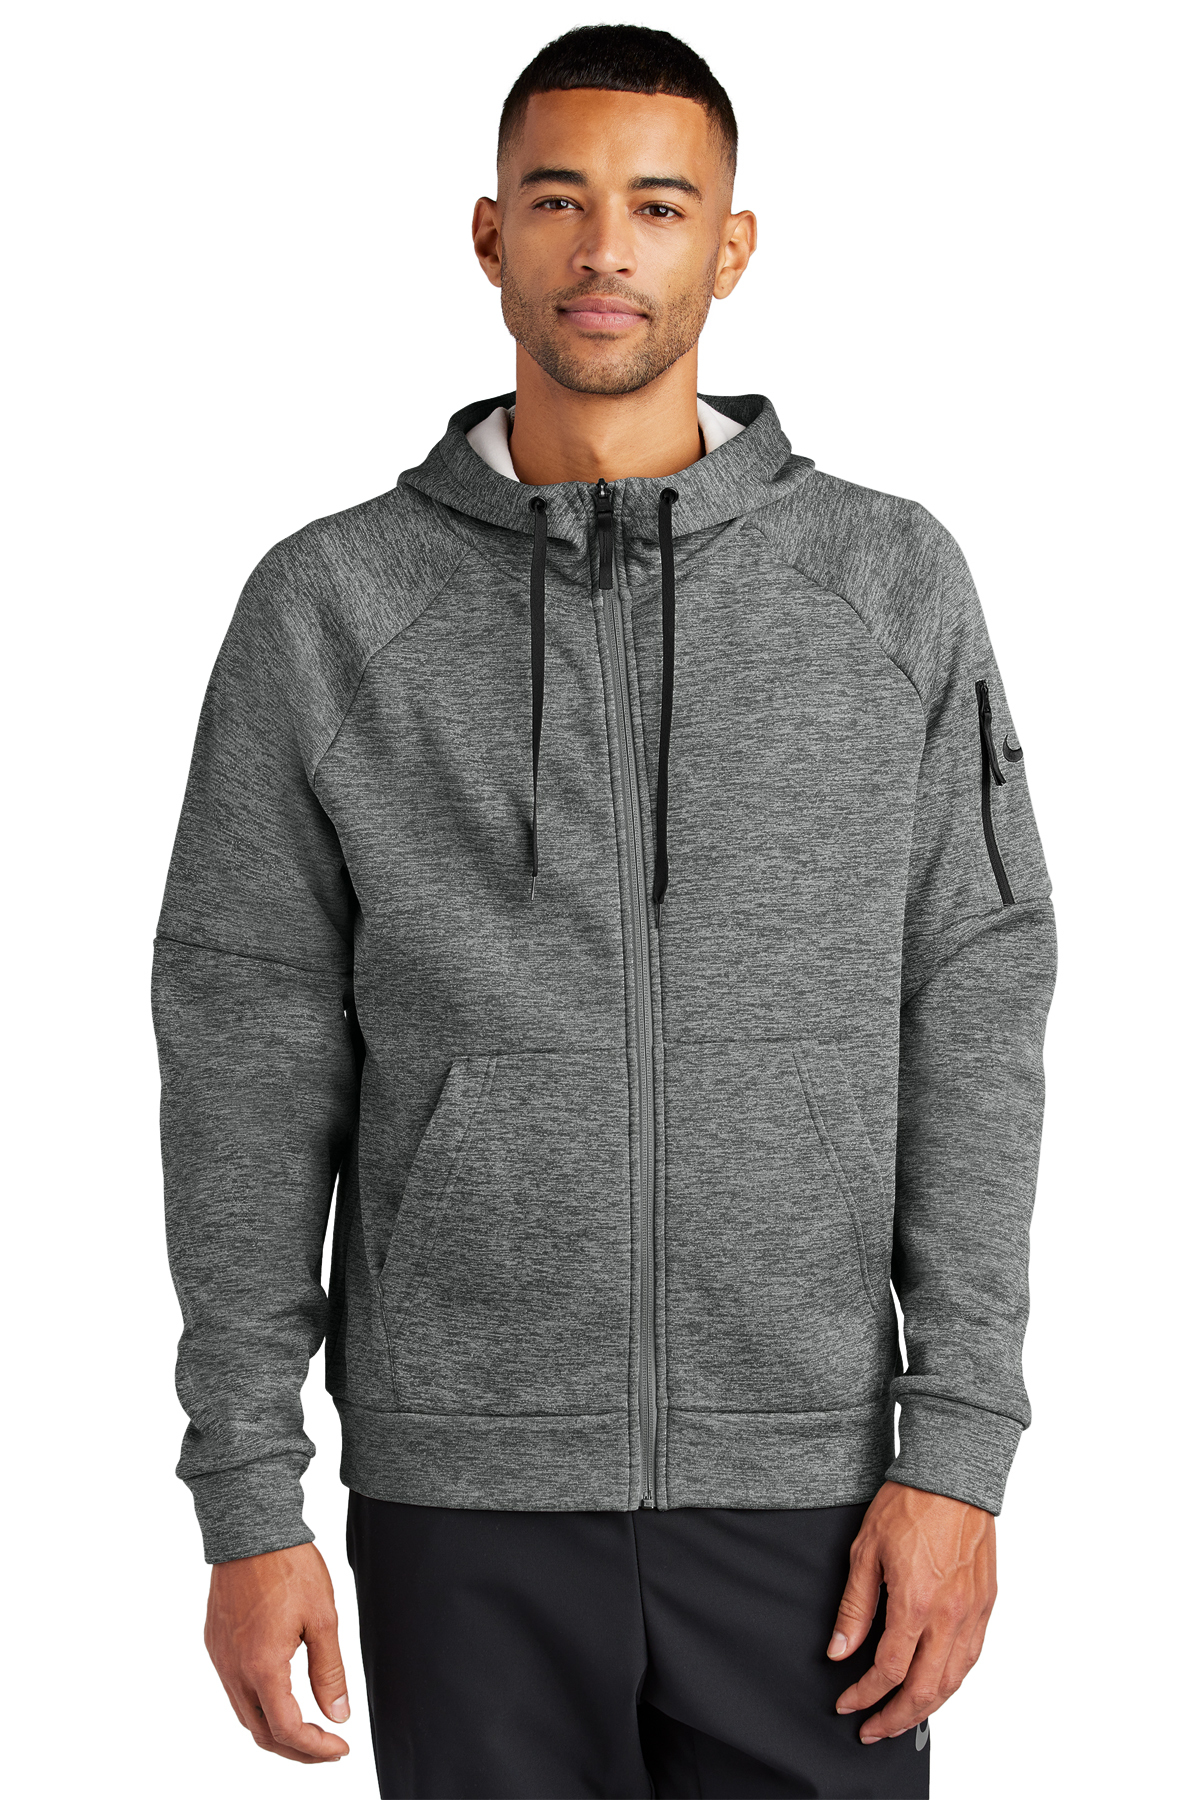 Nike Therma-FIT Pocket Full-Zip Fleece Hoodie, Product